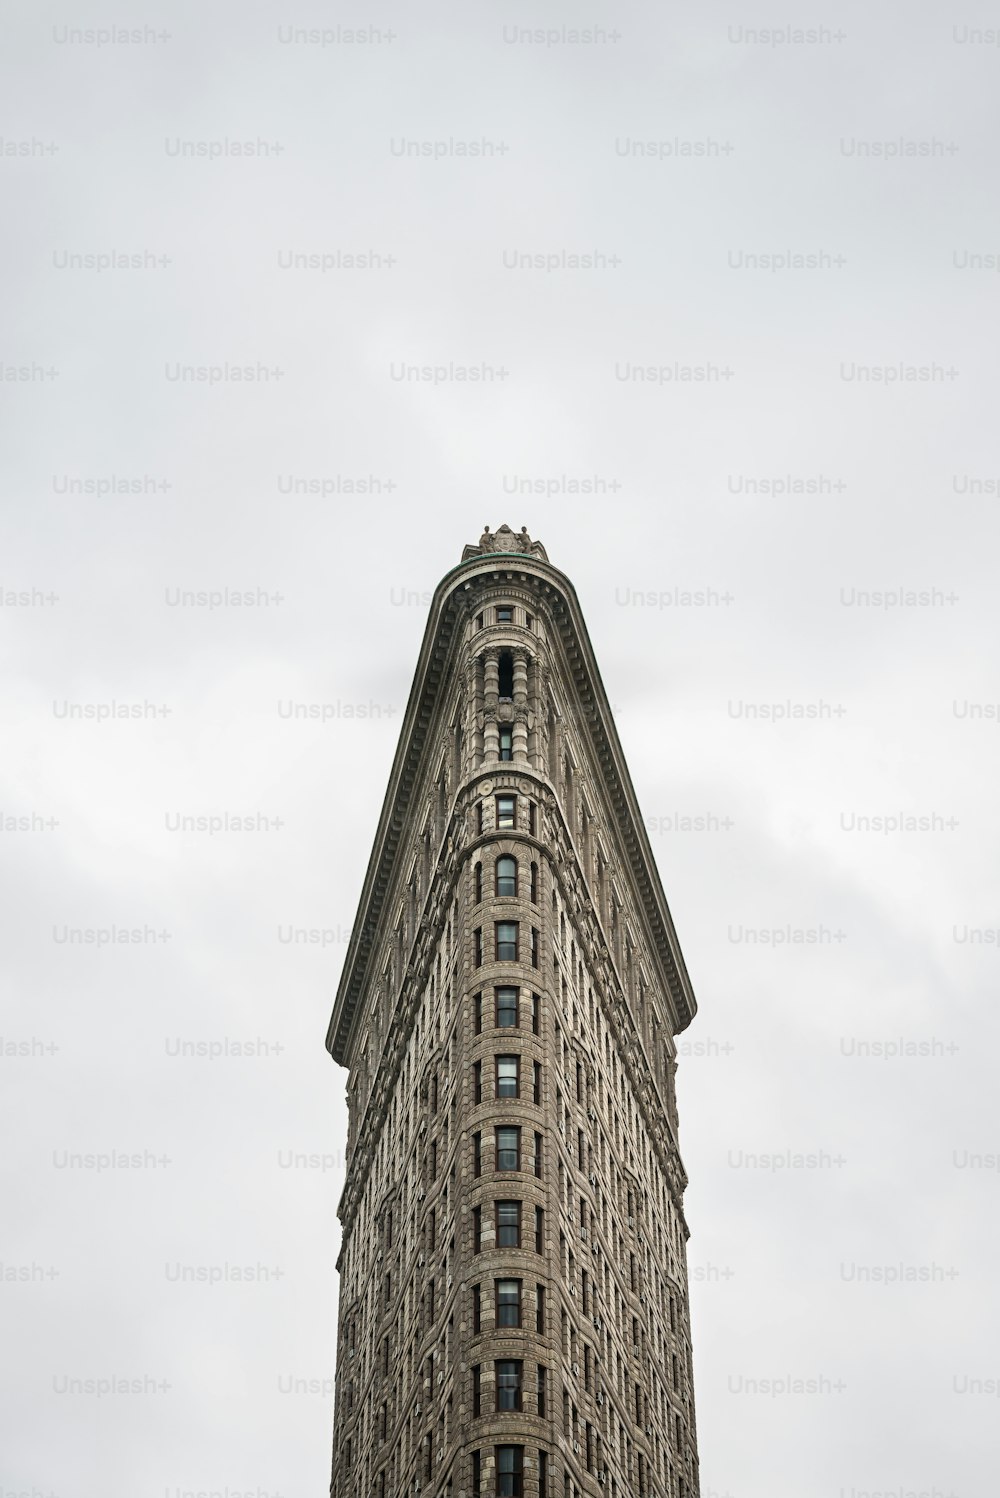 Vista frontale dell'edificio Flatiron a New York. Originariamente conosciuto come Fuller Building, fu completato nel 1902 su progetto di Daniel Burnham di Chicago e all'epoca divenne uno degli edifici più alti della città e uno dei soli due grattacieli a nord della 14th Street.